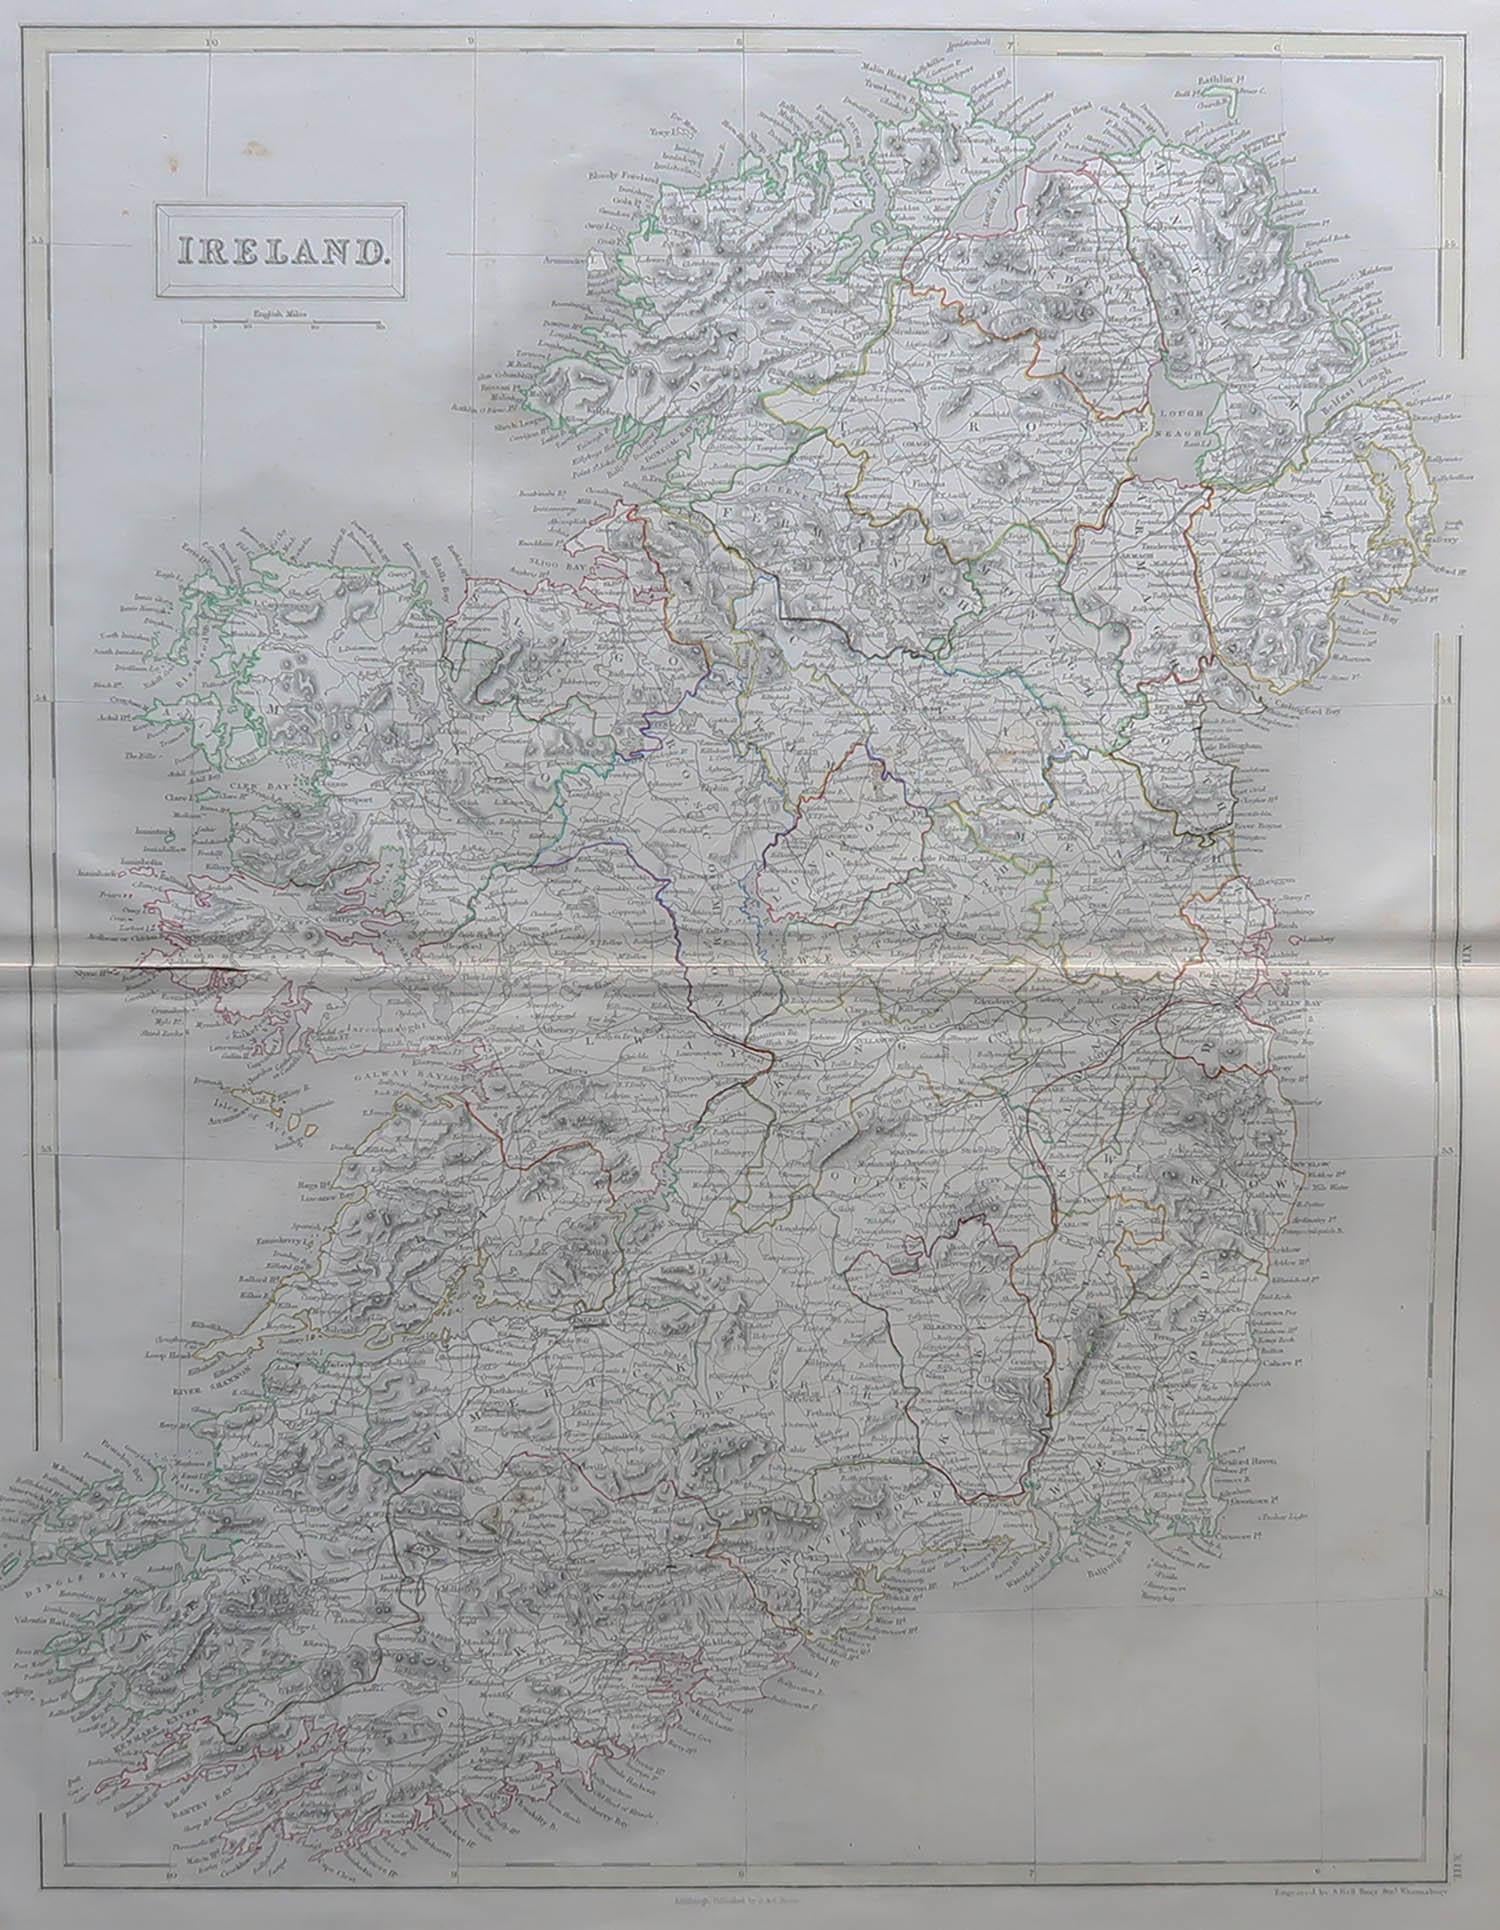 Tolle Karte von Irland

Gezeichnet und gestochen von Sidney Hall

Stahlstich 

Original-Farbumriss

Herausgegeben von A & C Black. 1847

Ungerahmt

Kostenloser Versand.

